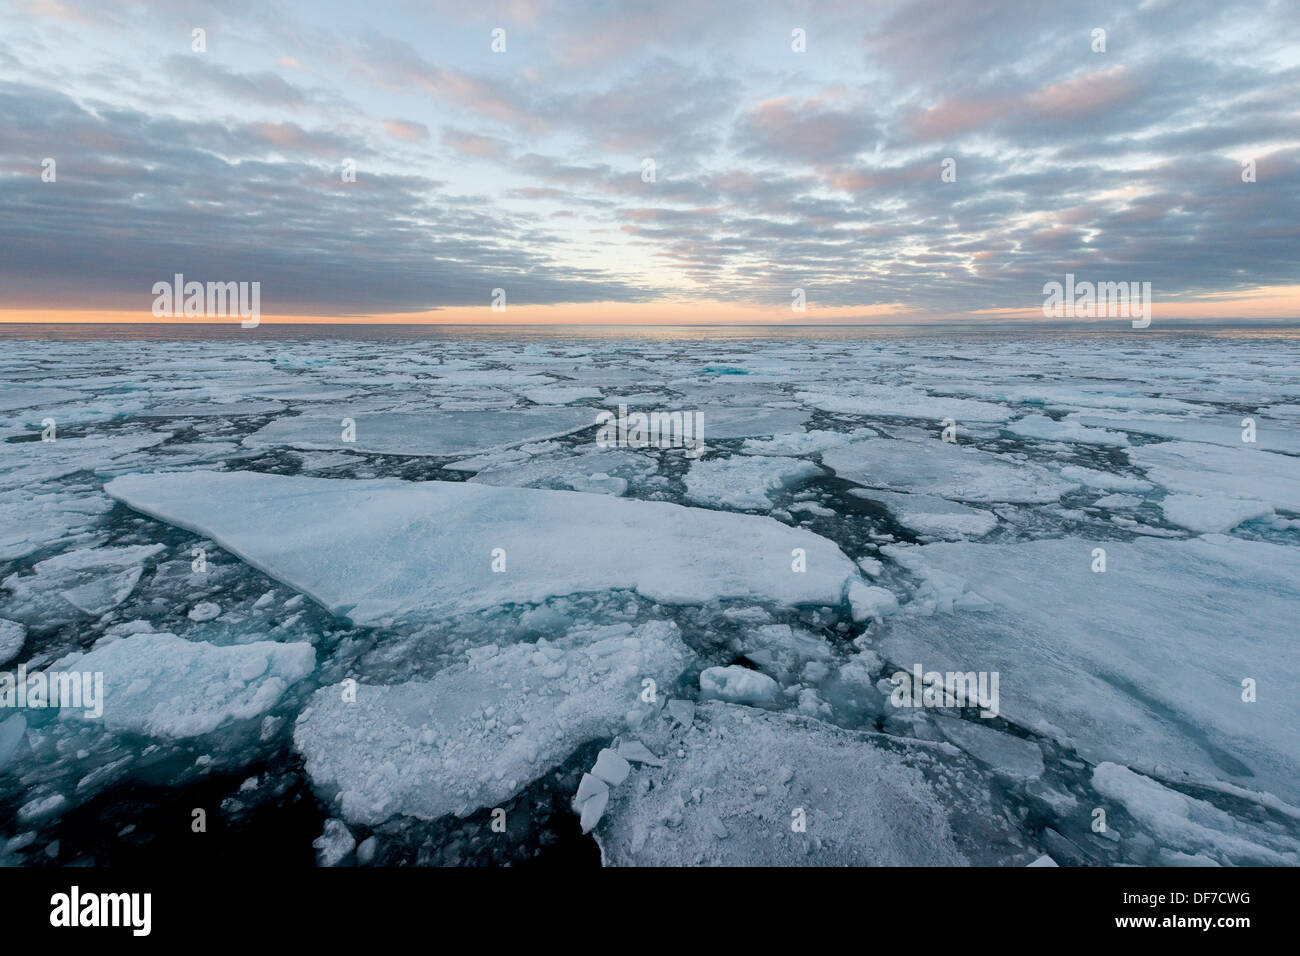 Des blocs de glace, la banquise, l'humeur du soir, l'océan Arctique, l'archipel du Svalbard, l'île de Spitsbergen, Svalbard et Jan Mayen (Norvège) Banque D'Images